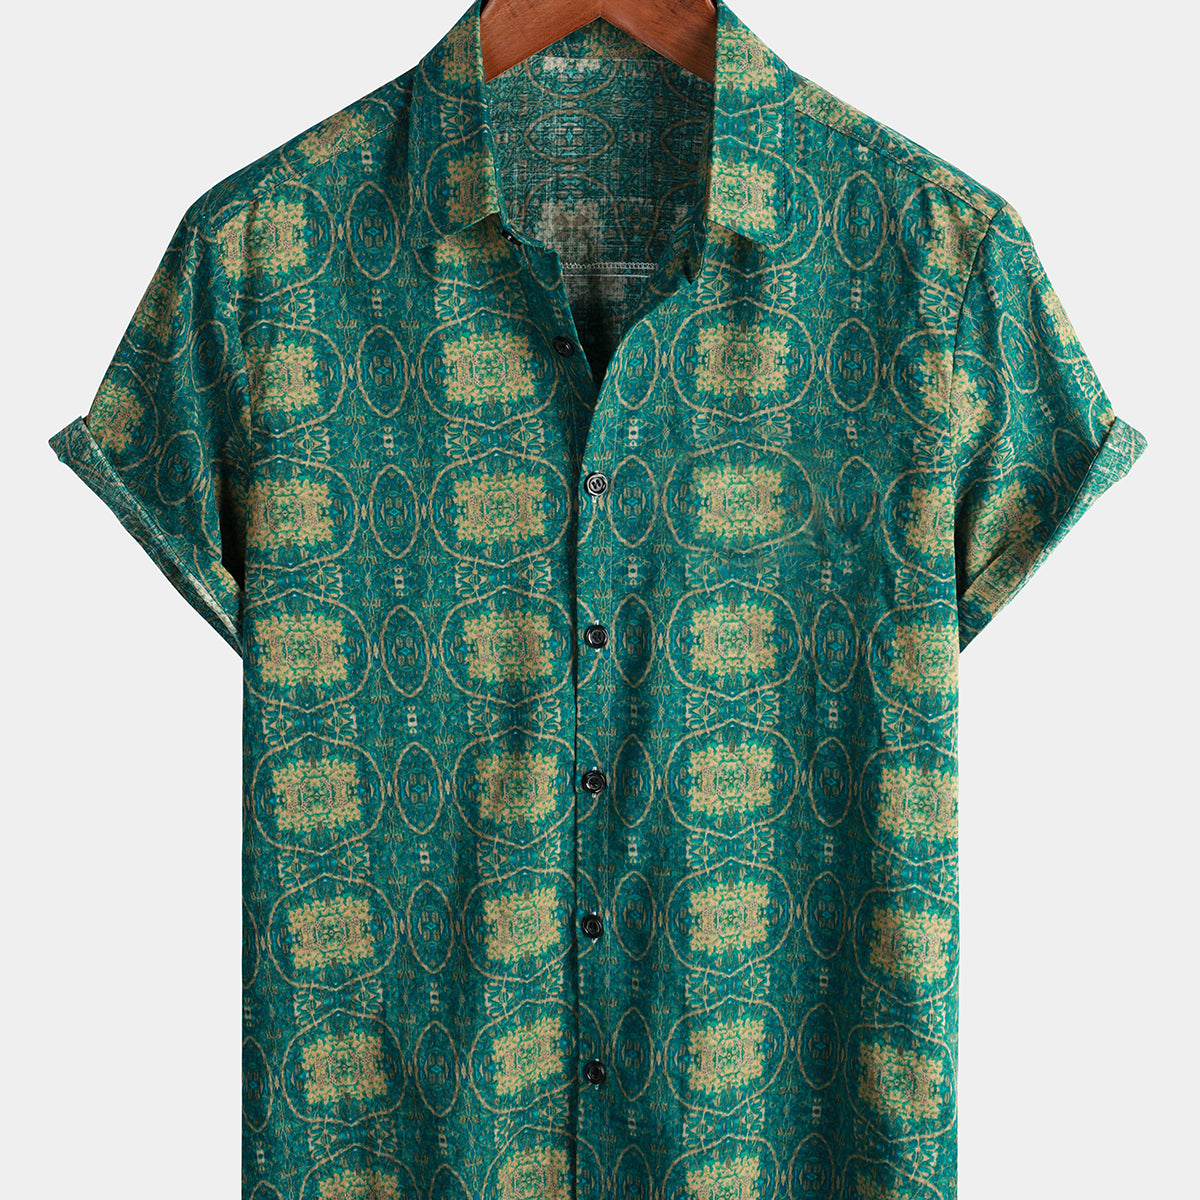 Camisa informal de algodón a rayas verdes vintage de manga corta de los años 70 con botones de verano retro para hombre